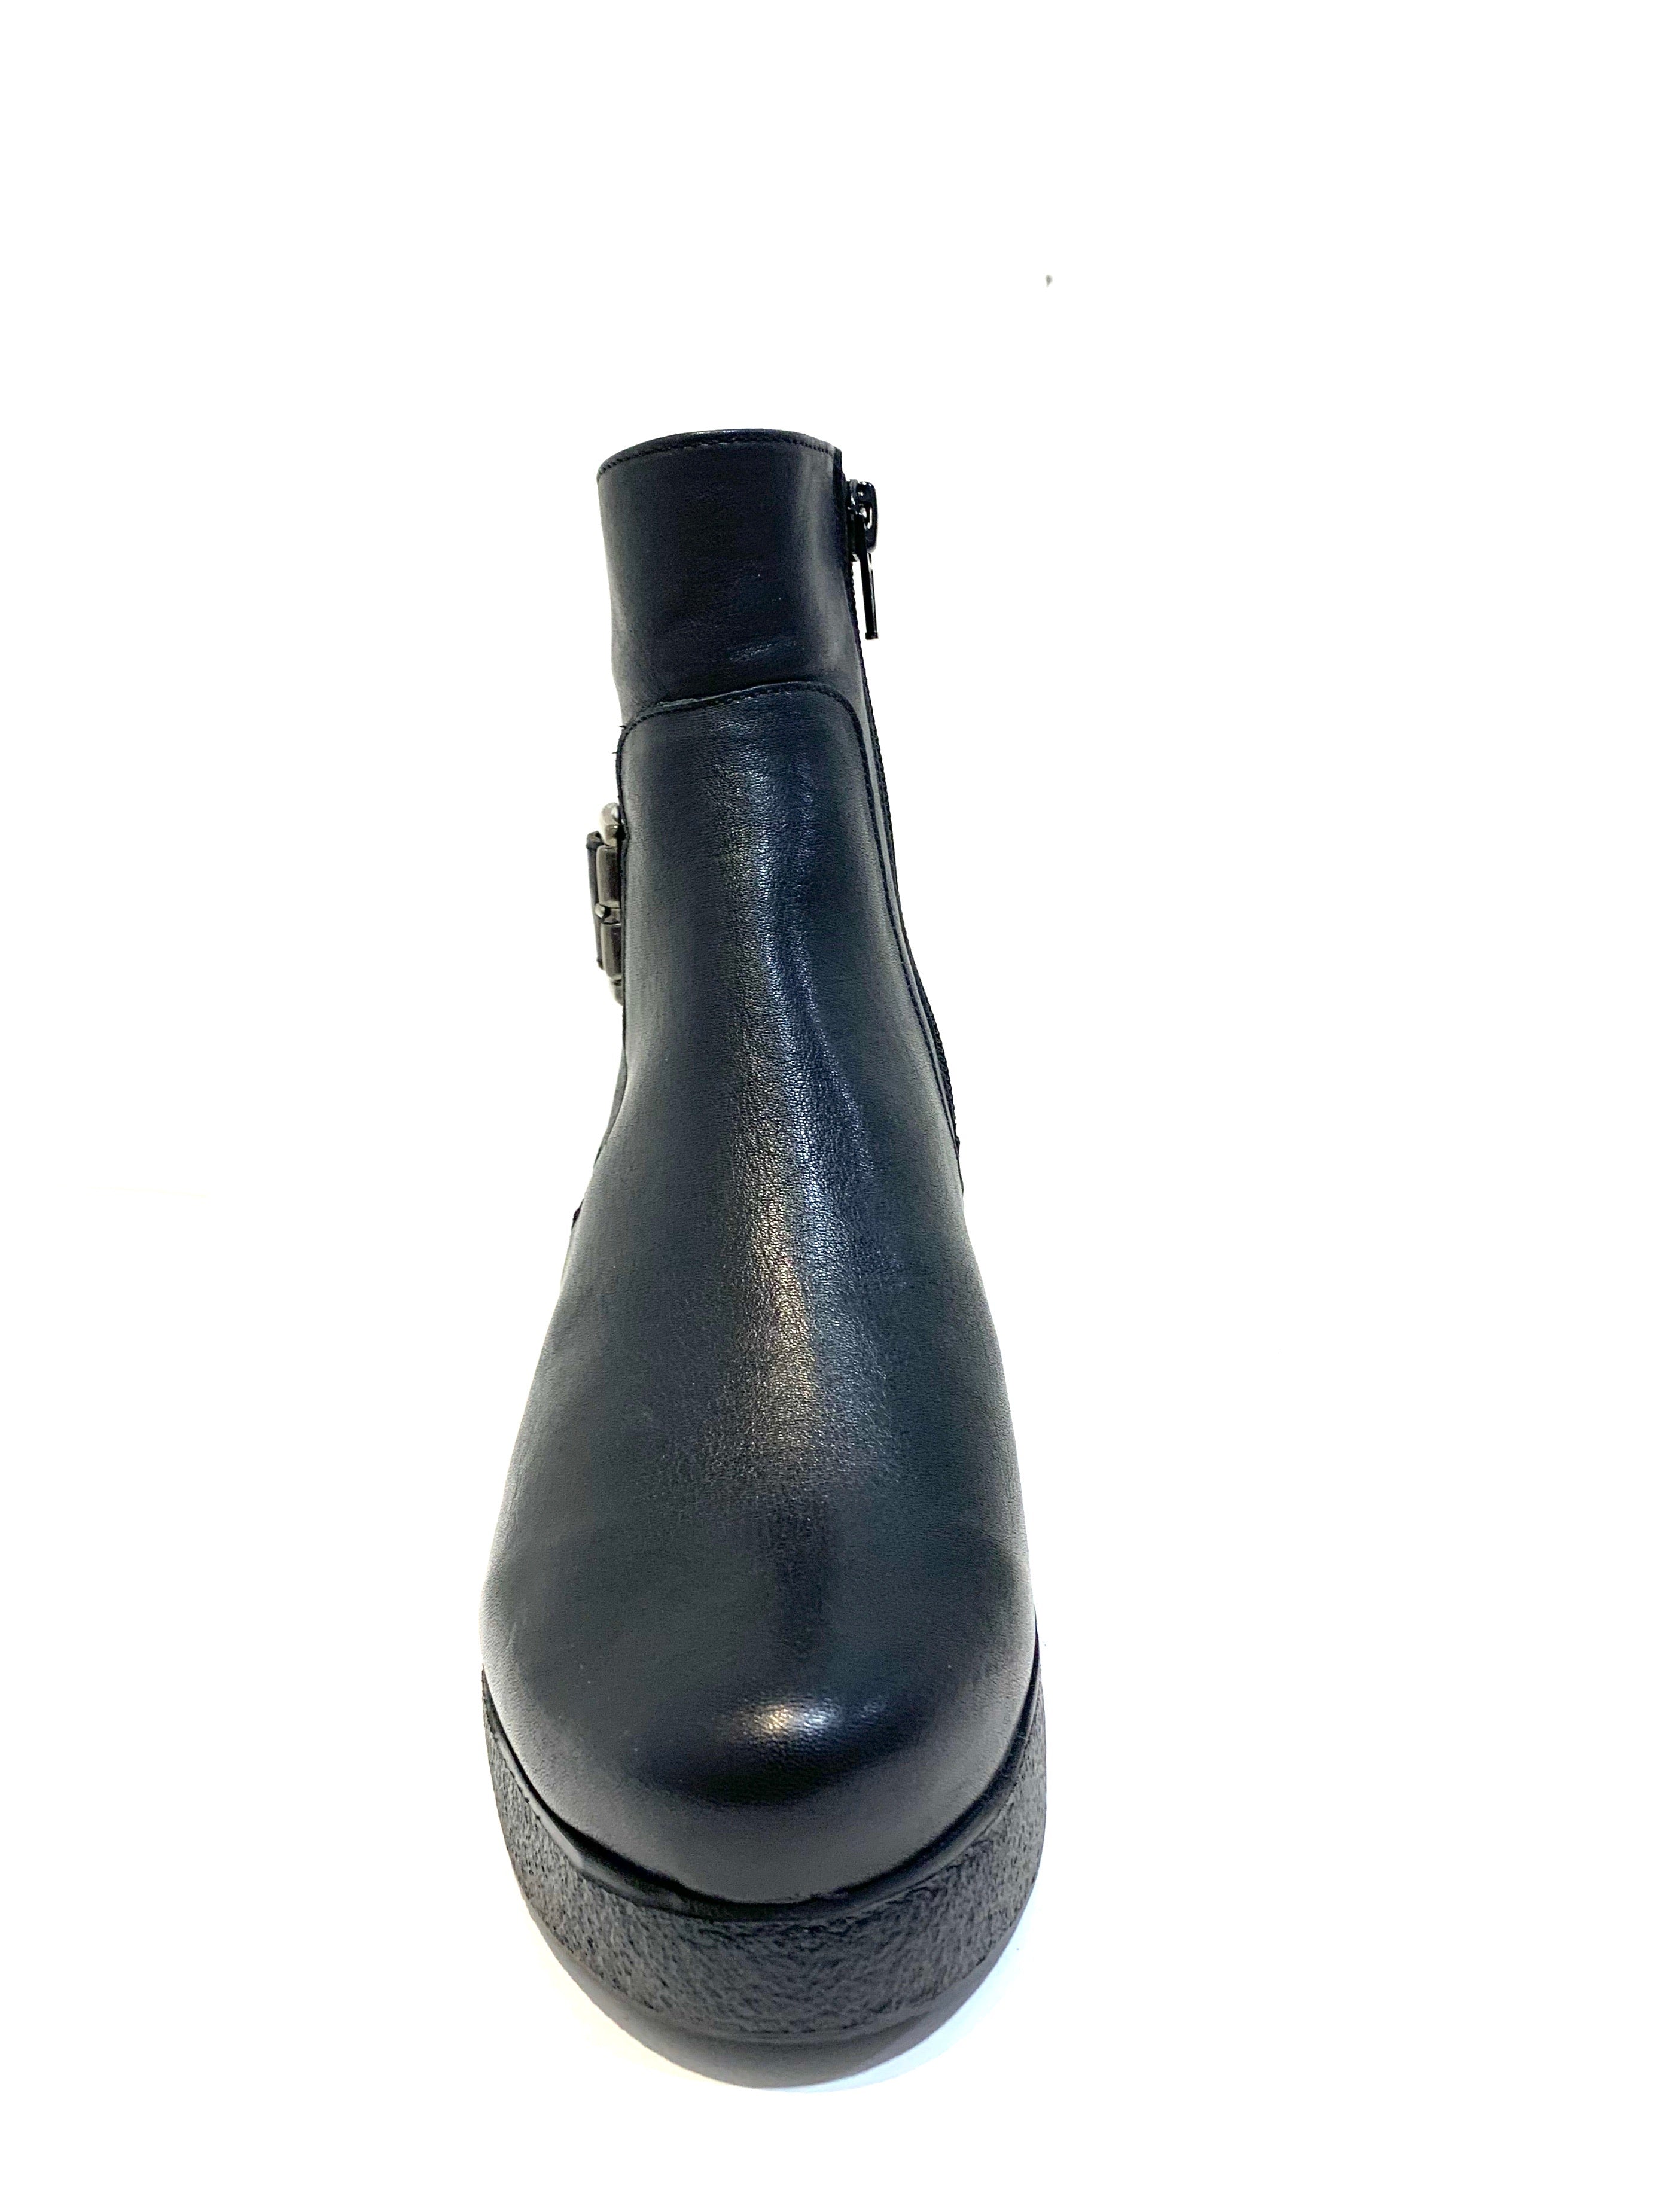 Wonders H-3208 Black Ankle Boot Wedge Zip Made In Spain